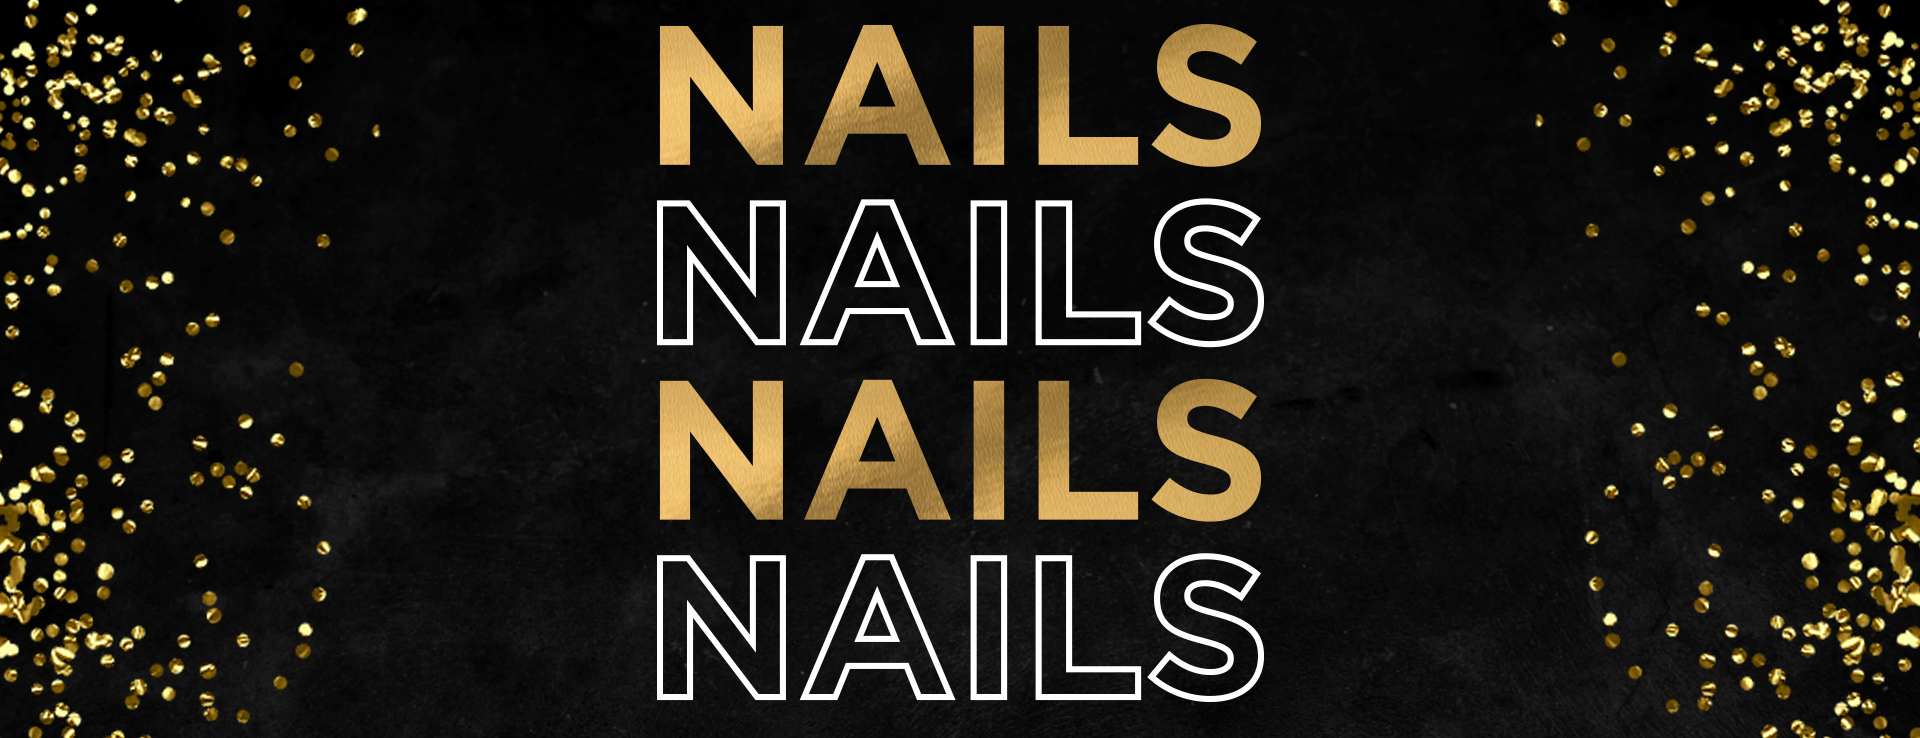 Black Friday Deals 2022 - Nails